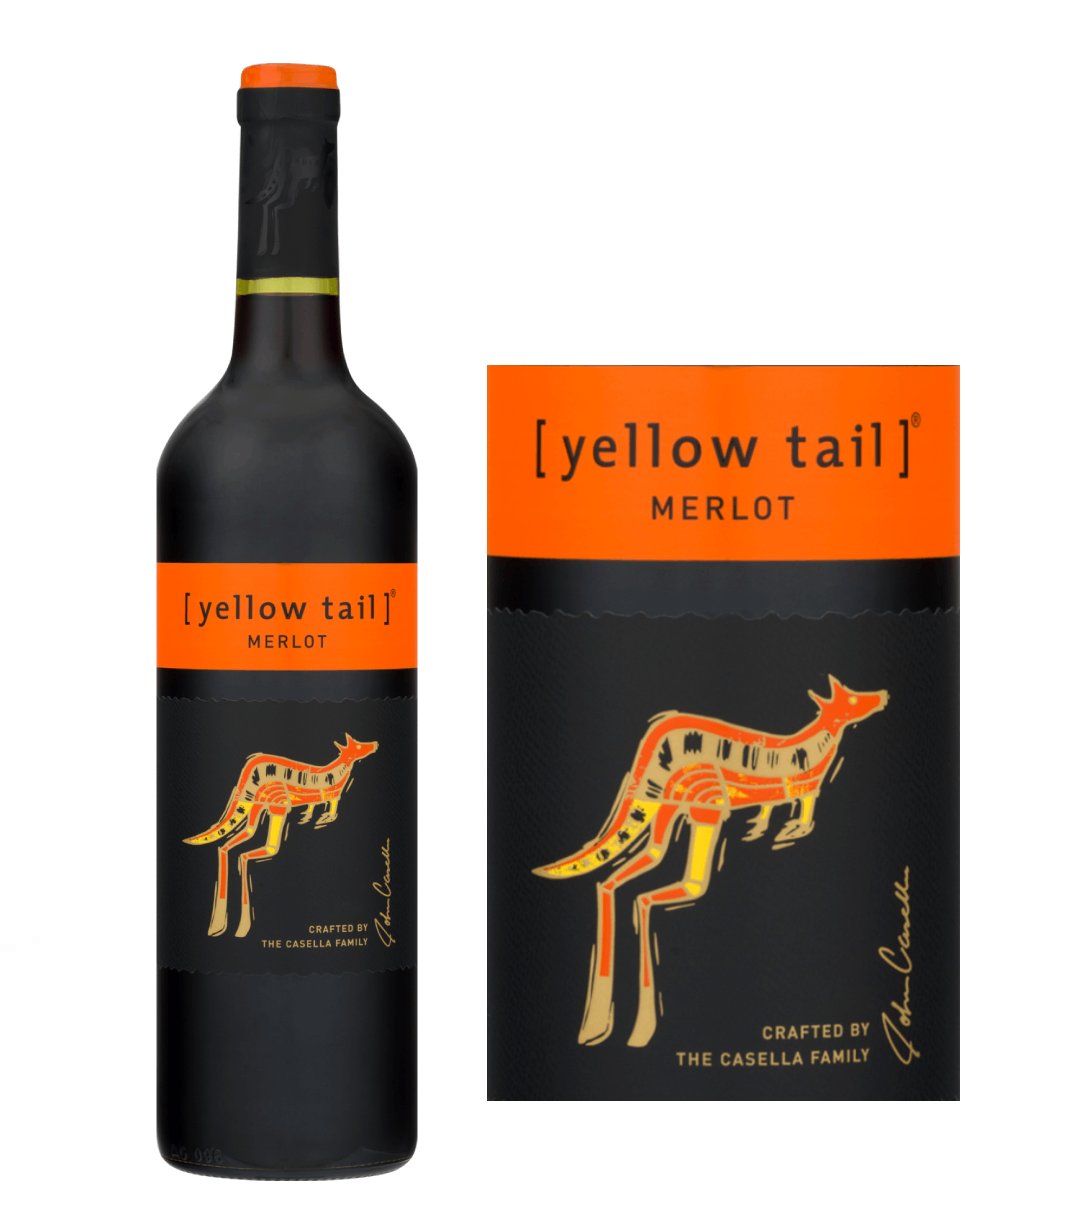 yellow tail wine review merlot